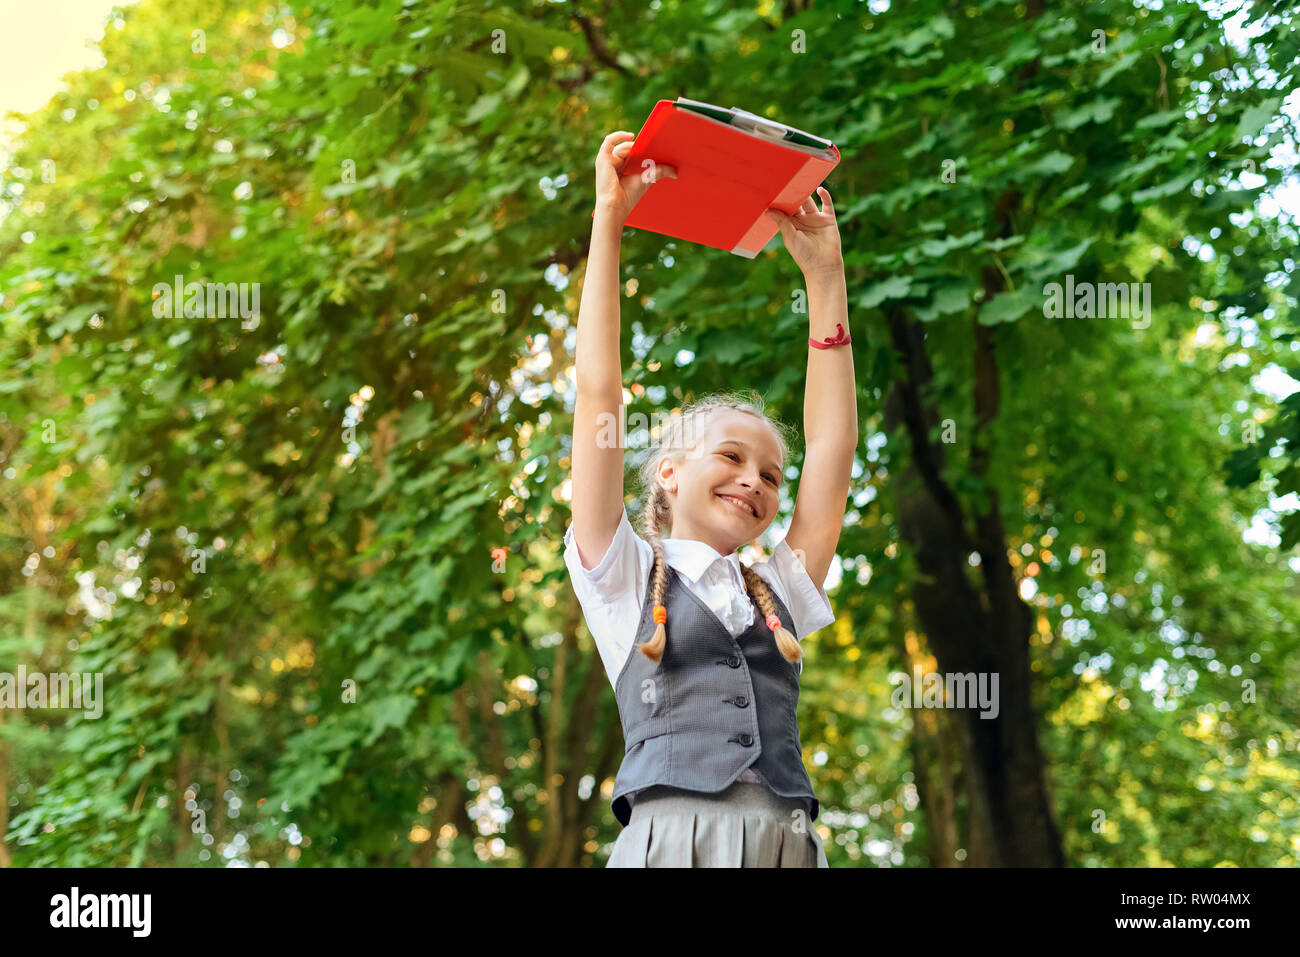 Lycéenne étudiant heureux avec des nattes en uniforme la tenue des livres dans les mains sur la tête en journée ensoleillée Banque D'Images